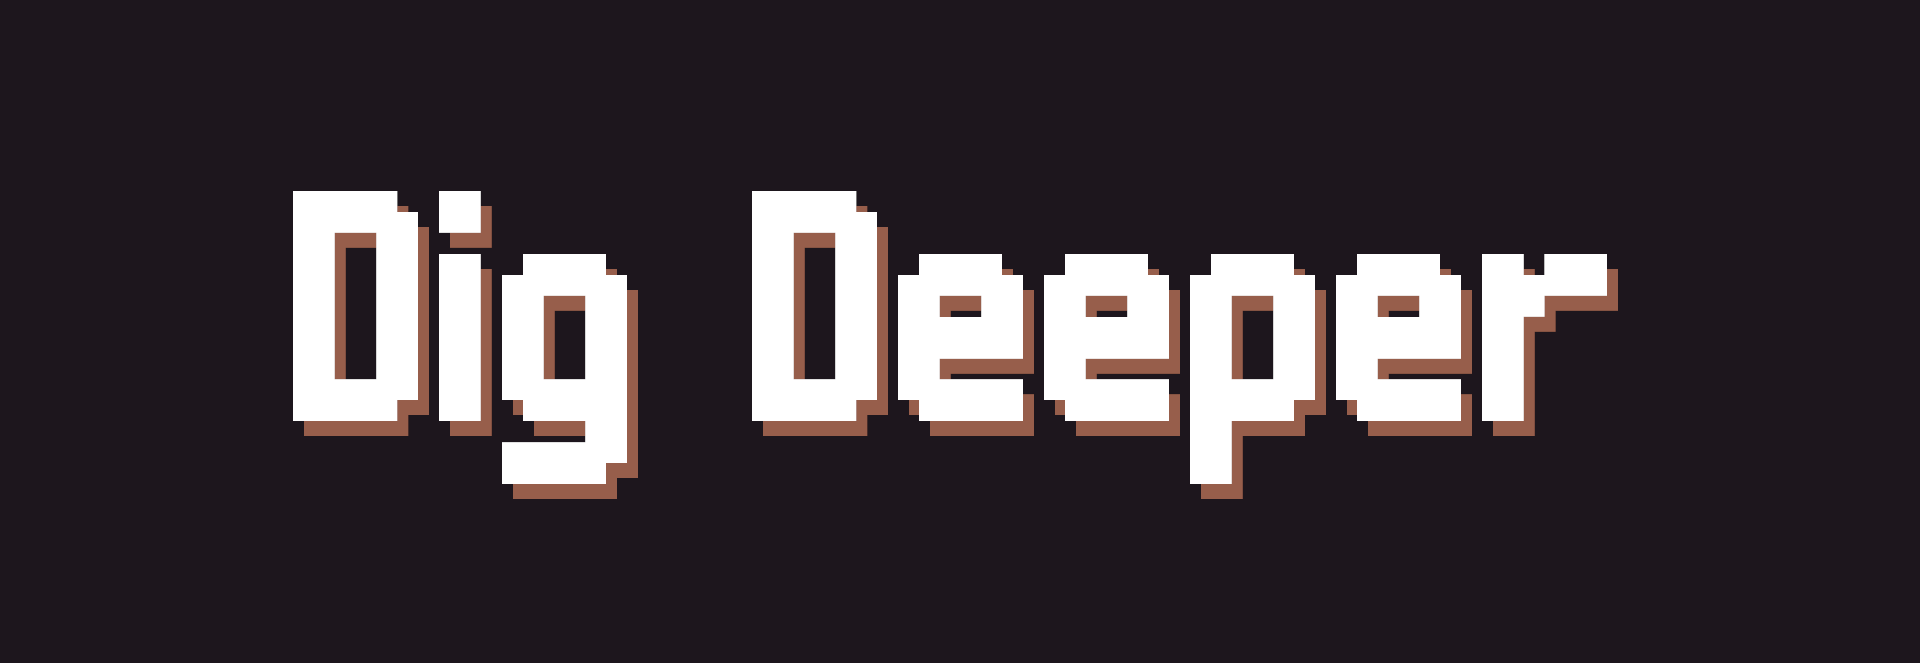 Dig Deeper